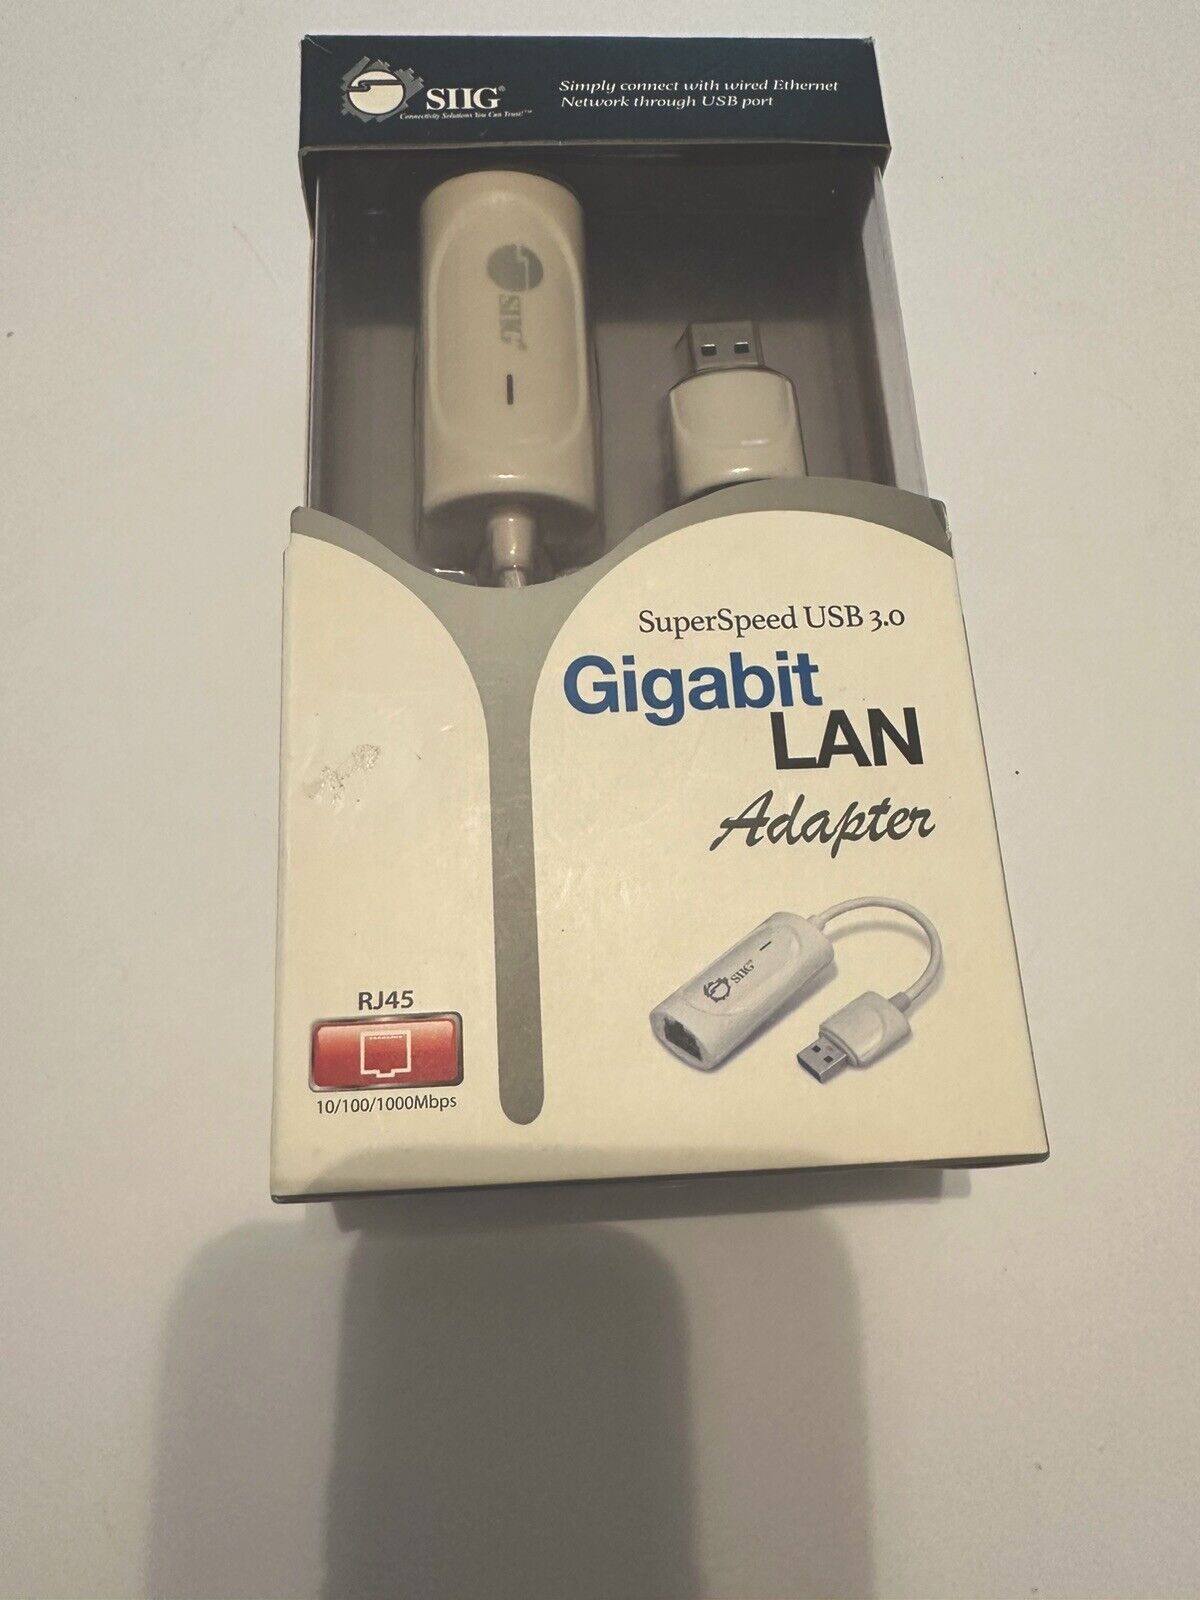 SIIG SuperSpeed USB 3.0 Gigabit LAN Adapter - White